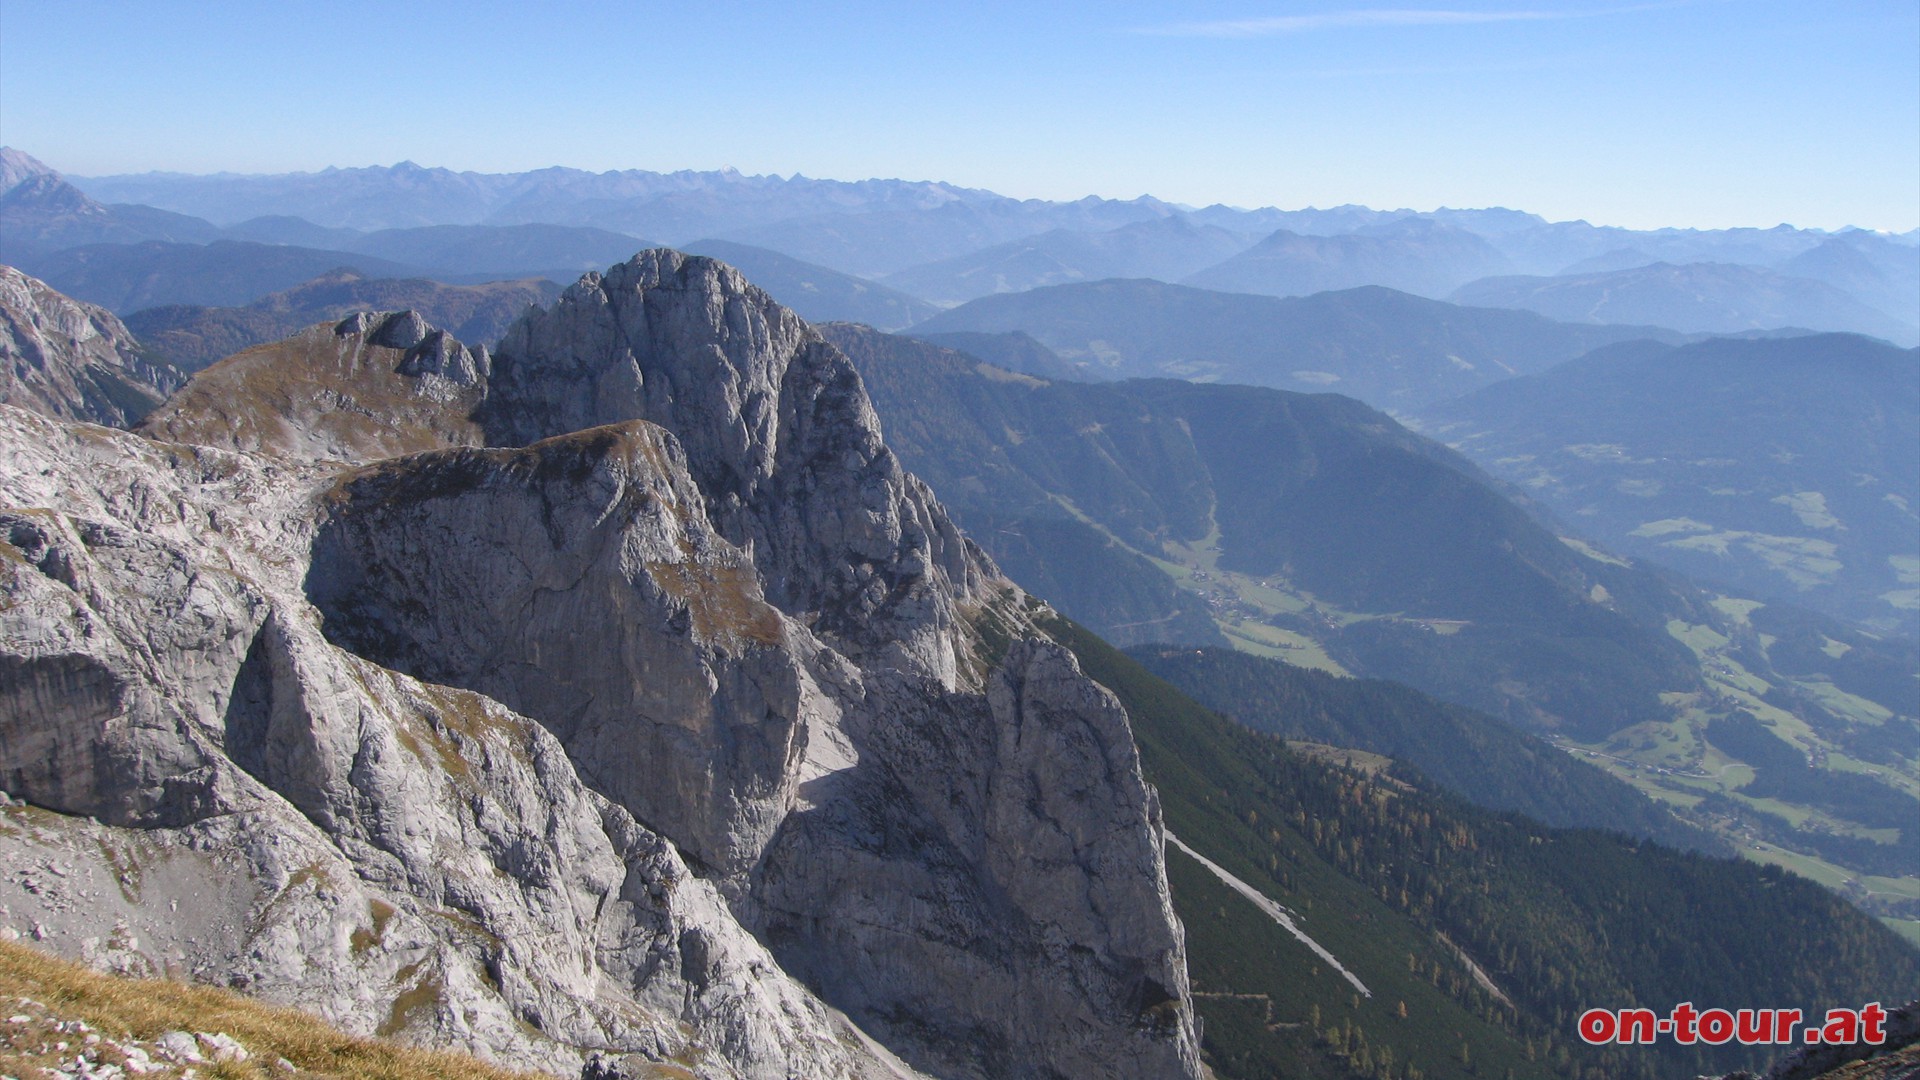 Vom Gipfel aus erkennen wir besonders deutlich das Große und Kleine Fieberhorn und dahinter den Hochthron.